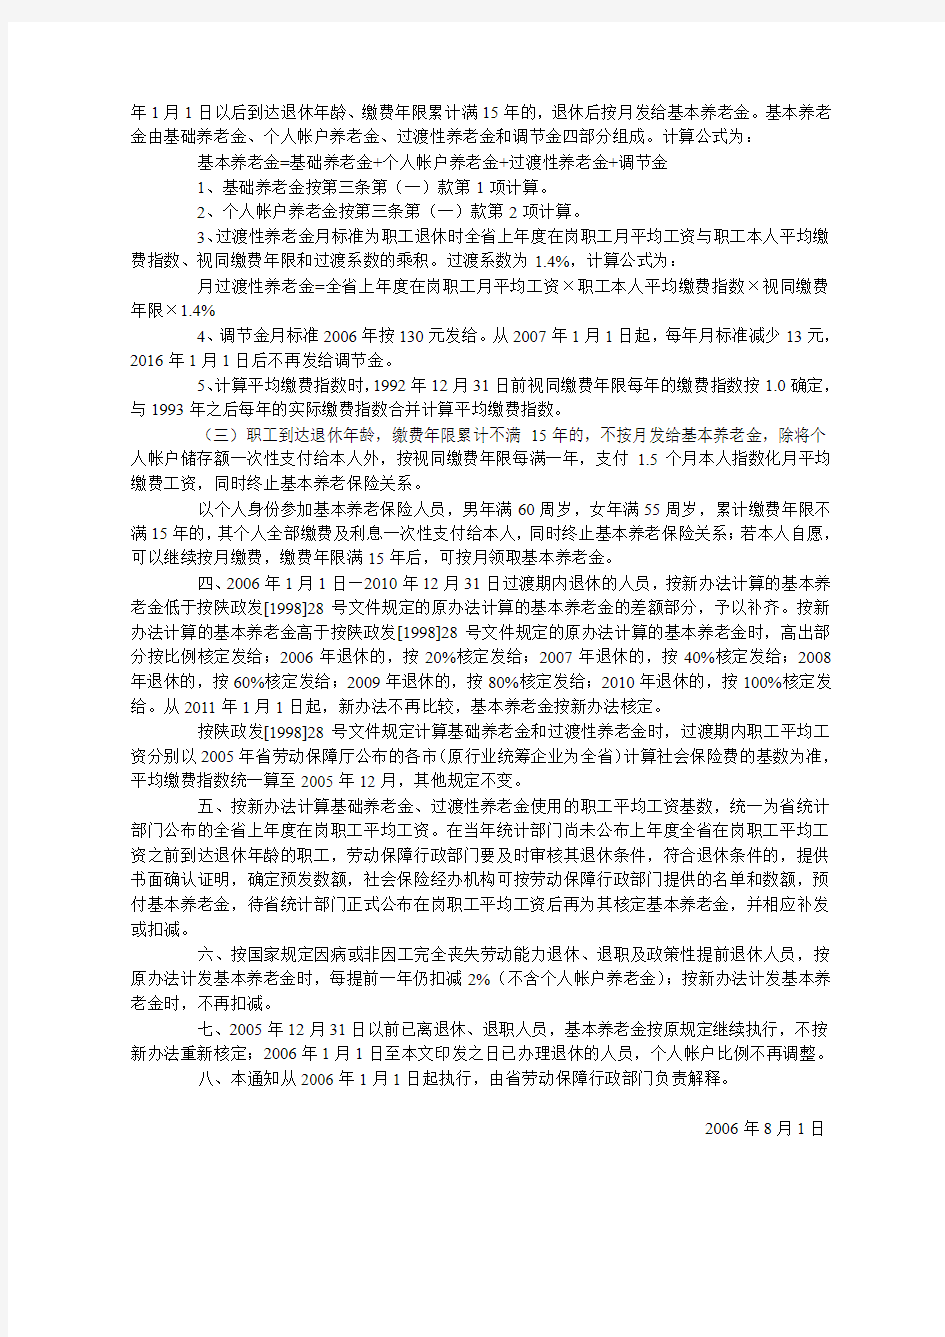 陕西省劳动和社会保障厅关于改革城镇企业职工基本养老金计发办法有关问题的通知